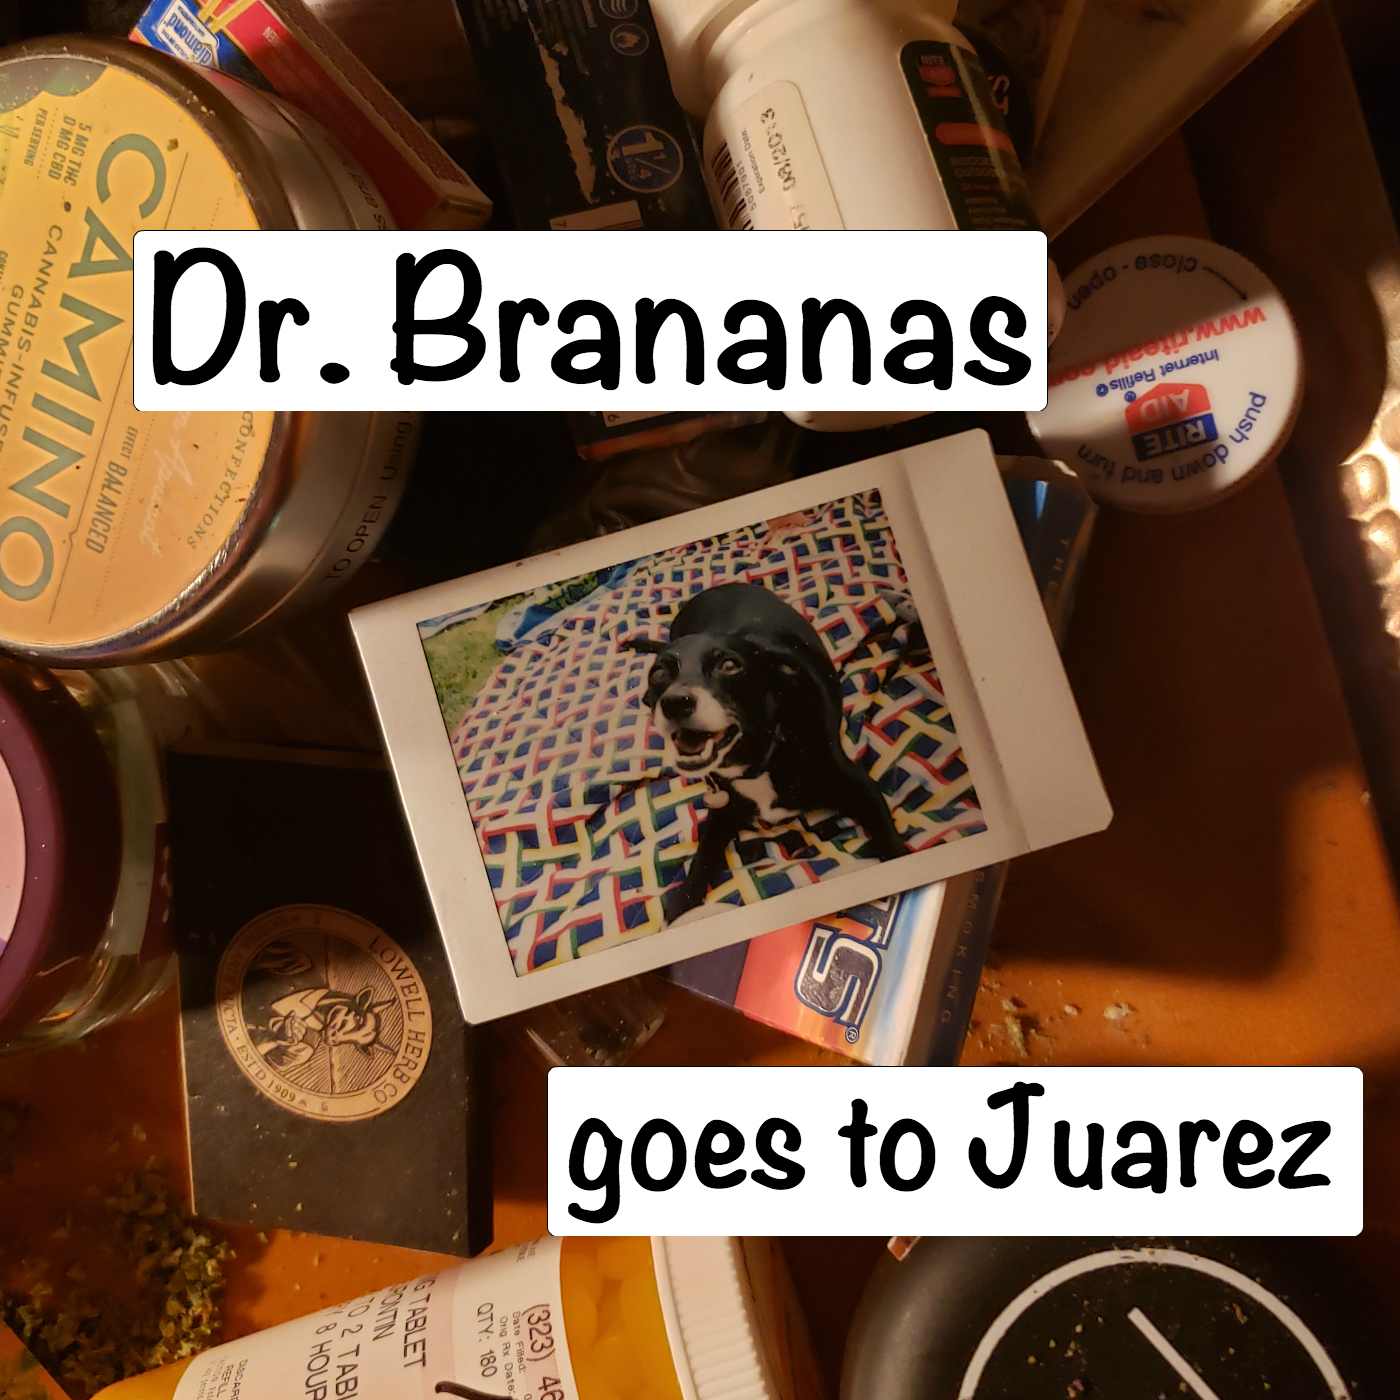 S6:E19 - Dr. Brananas goes to Juarez